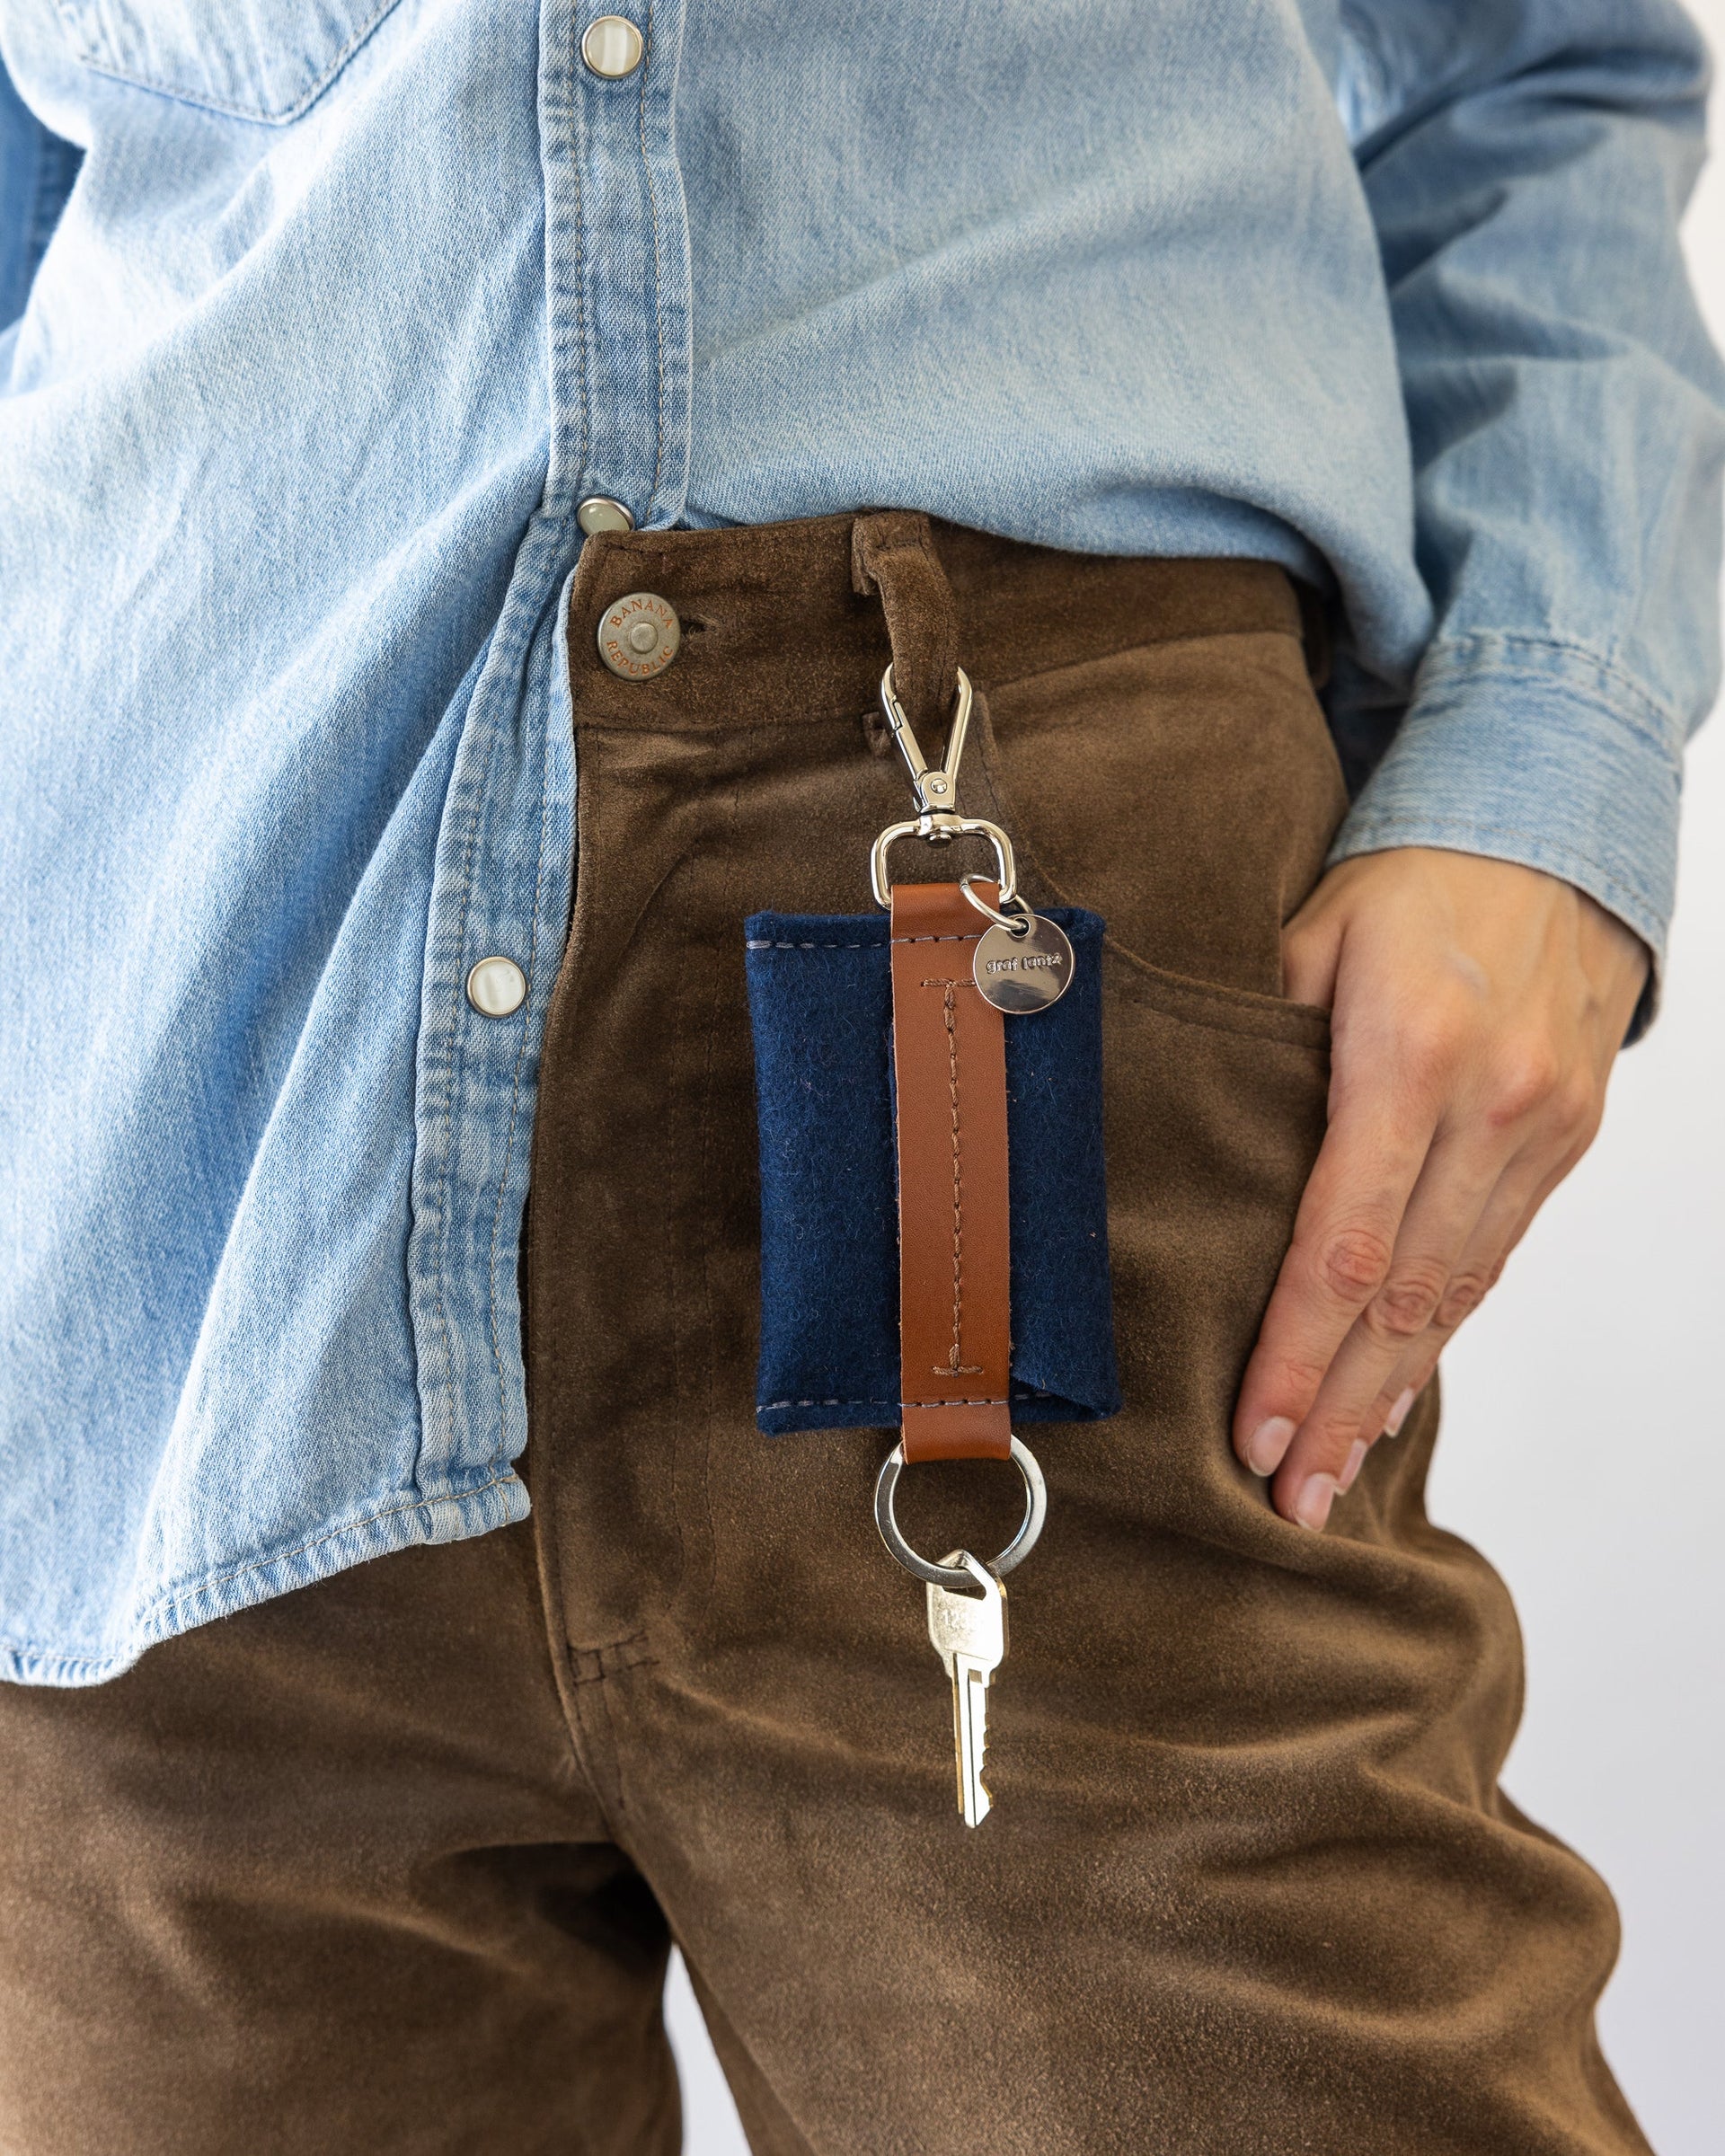 Blue Merino Wool Card Key Fob on woman's belt loop of brown pants, front view.